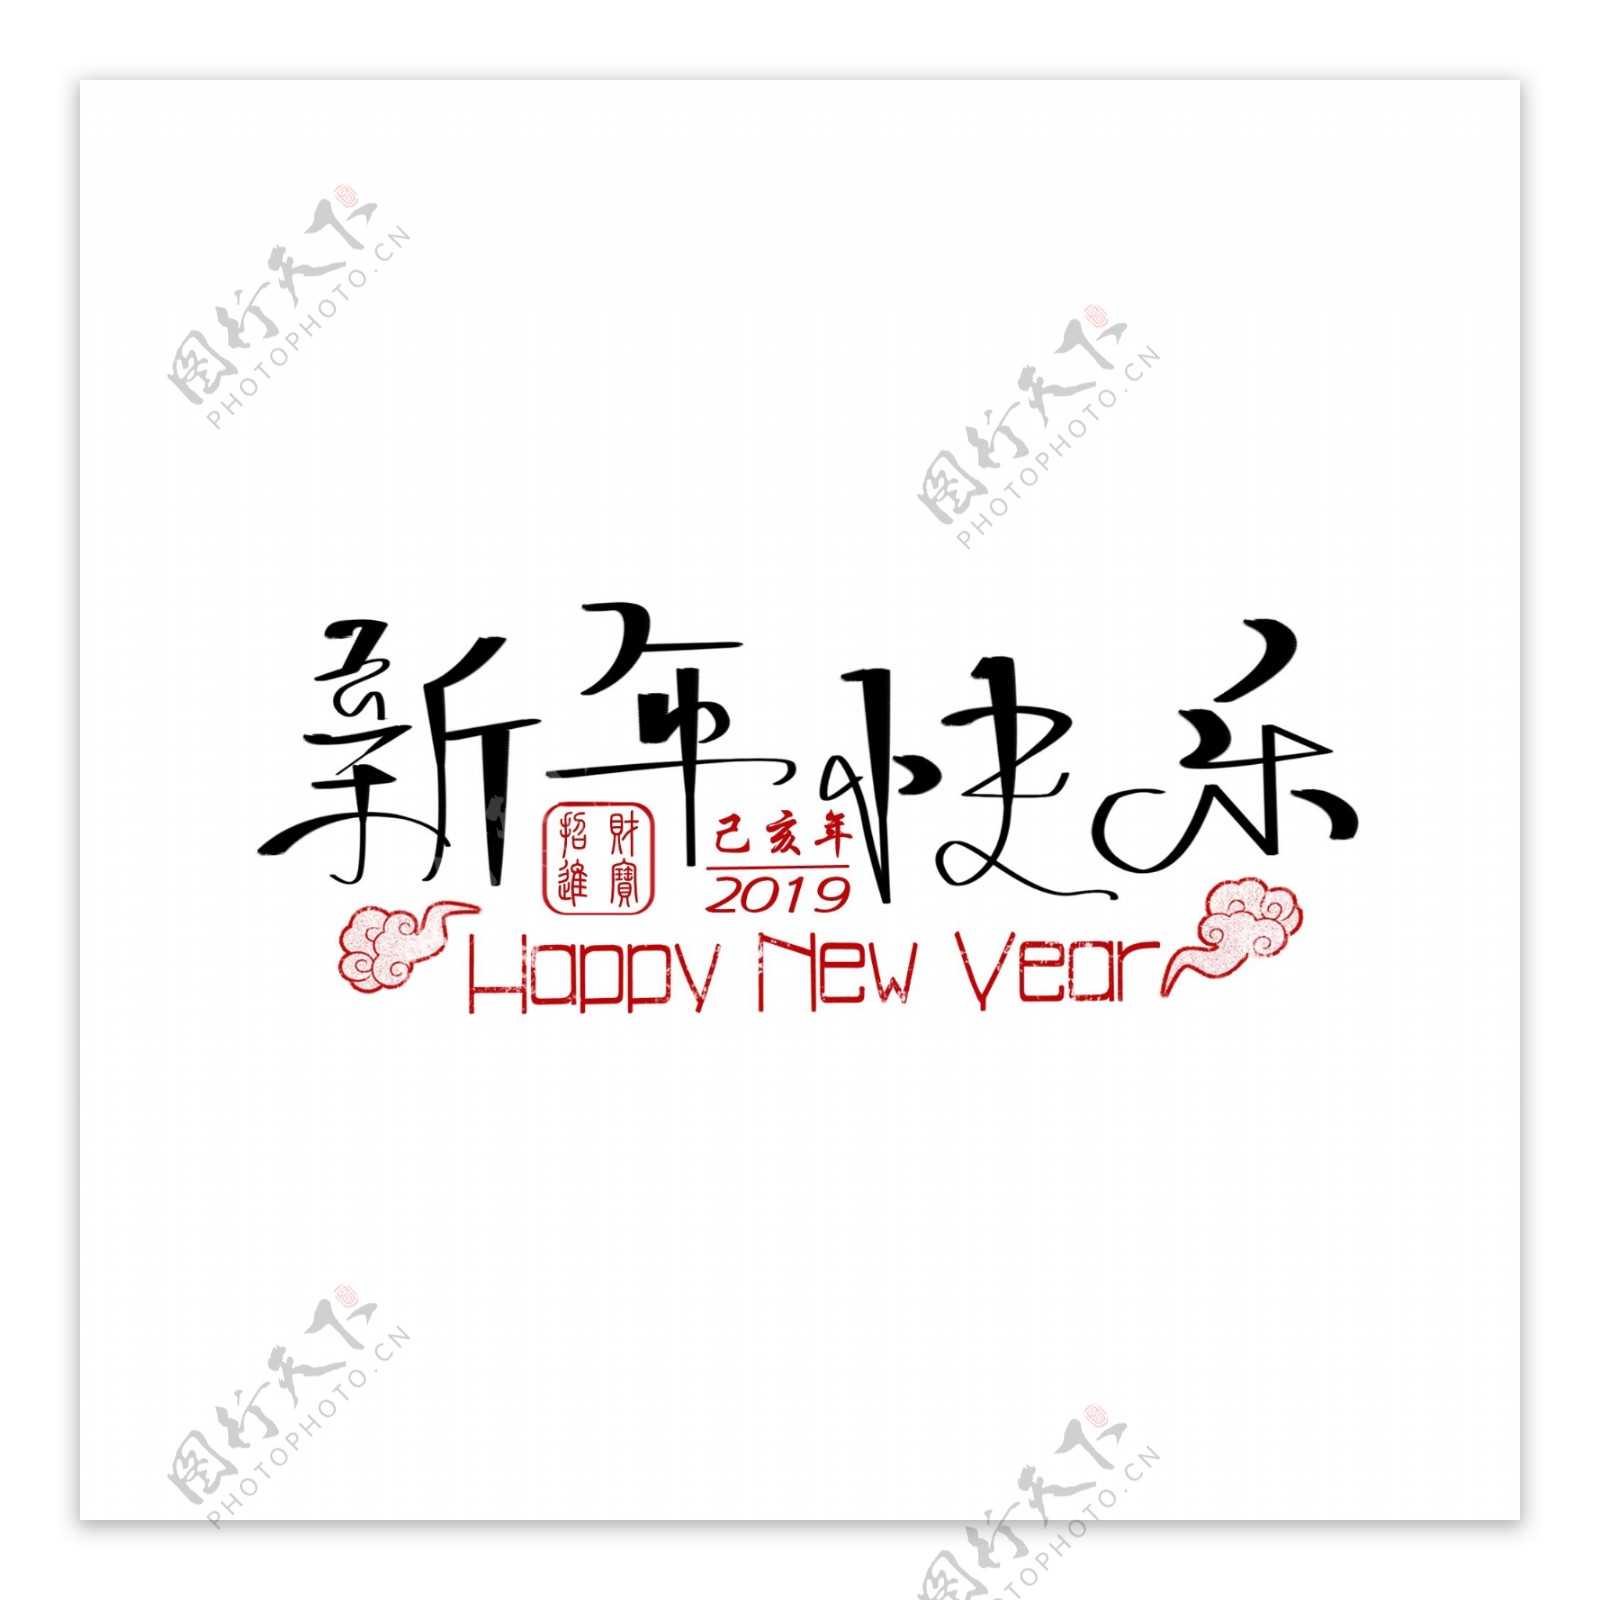 中国风新年快乐手绘艺术字